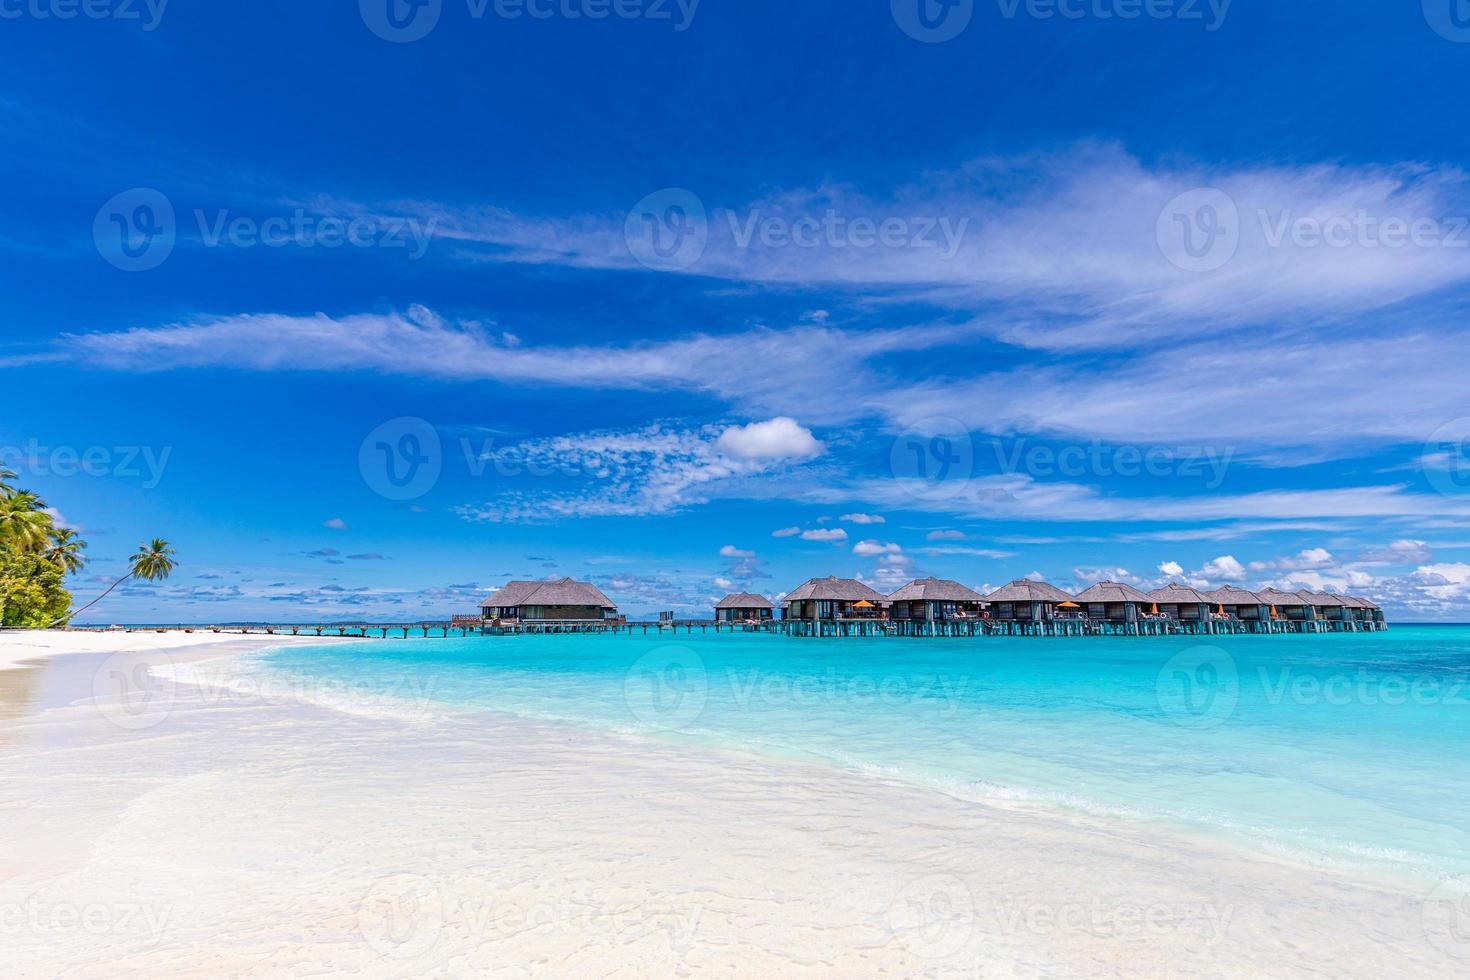 villas sobre el agua en la laguna tropical azul. vistas infinitas al mar con horizonte y lujosas villas o bungalows sobre el agua, maldivas o polinesia francesa foto